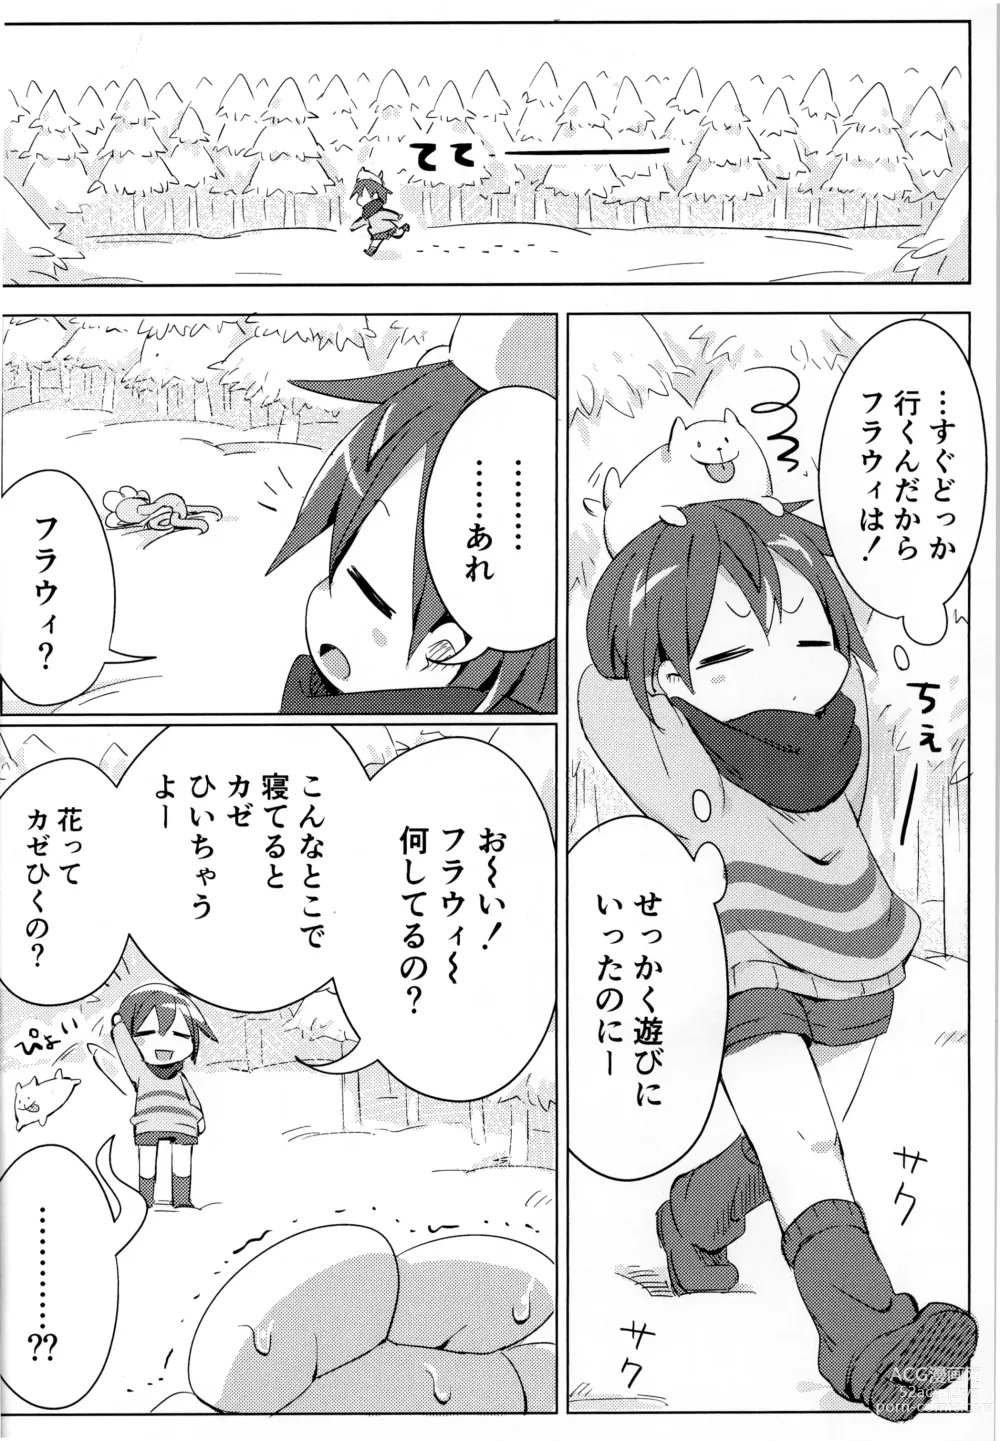 Page 9 of doujinshi Flowey, Daijoubu?